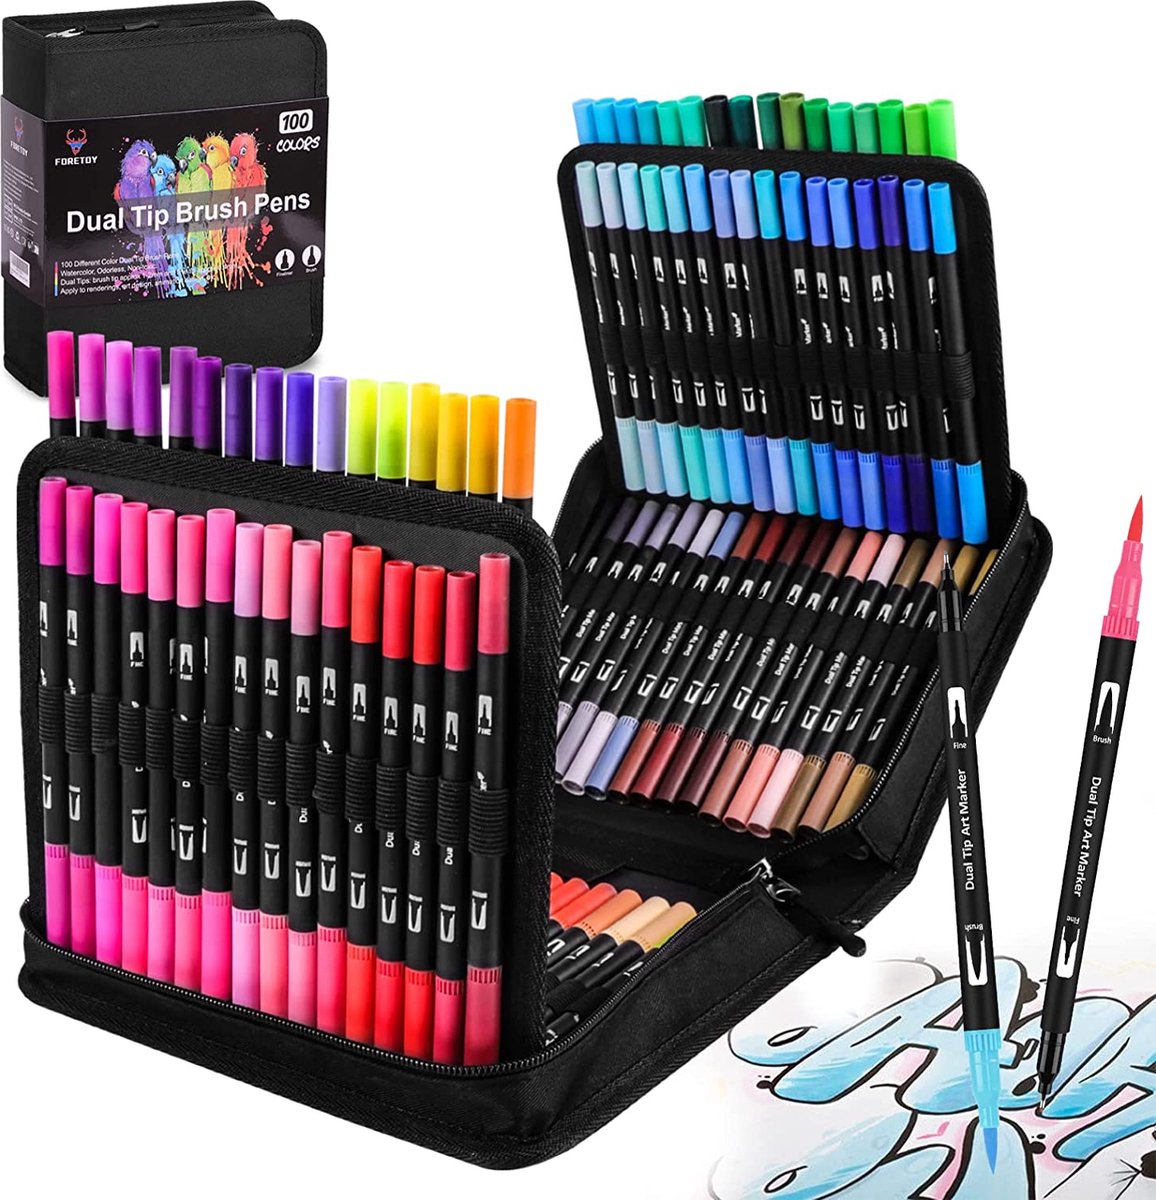 PPING crayon de couleur enfant crayon aquarellable Crayons de couleur  Crayons à colorier pour les adultes Coloration crayons pour adultes pack 24